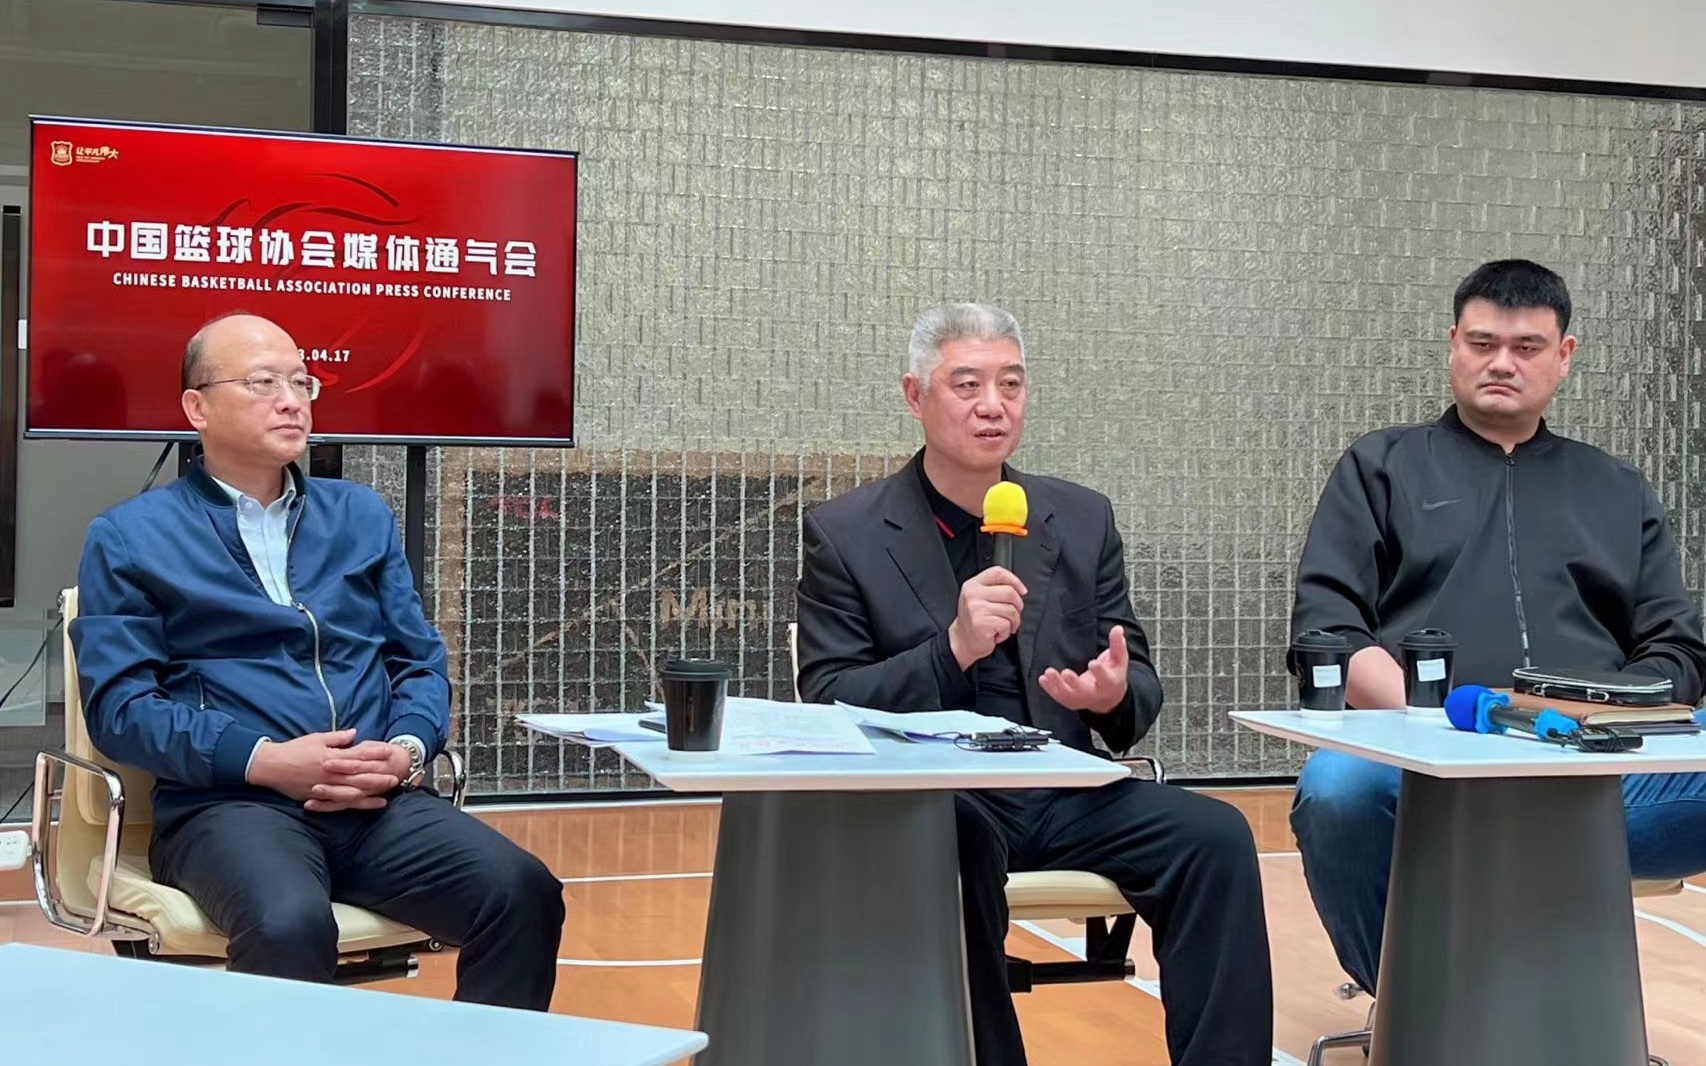 姚明、徐济成和张雄（从右至左）在媒体通气会上宣布处罚决定。  图/新华社